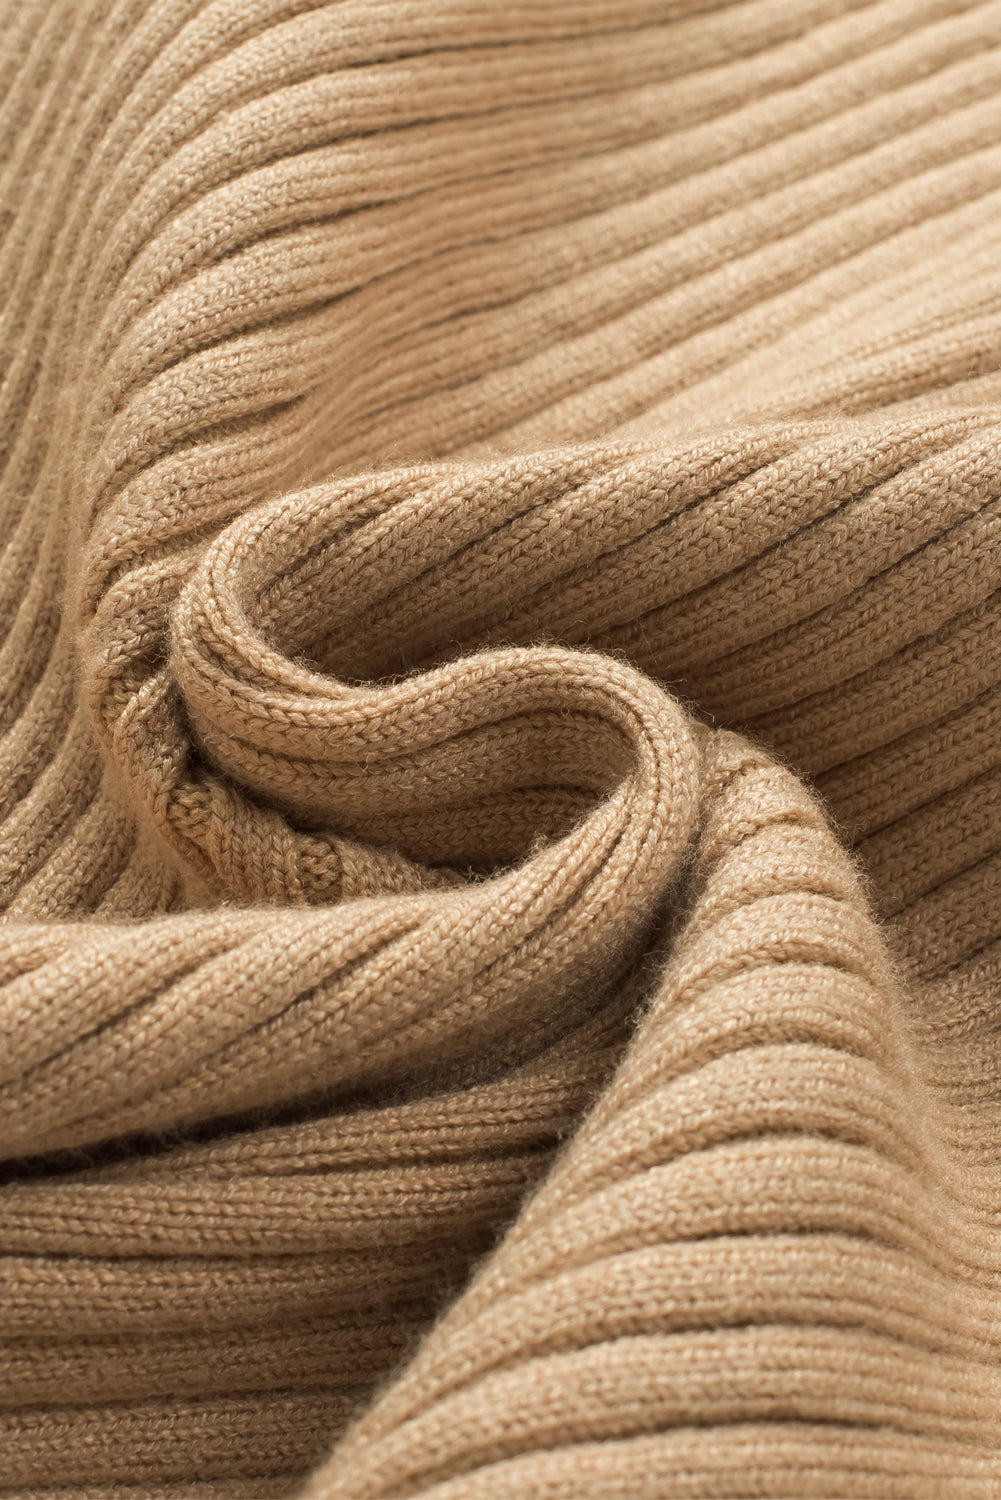 Rebrasti pleteni pulover s okruglim izrezom boje marelice